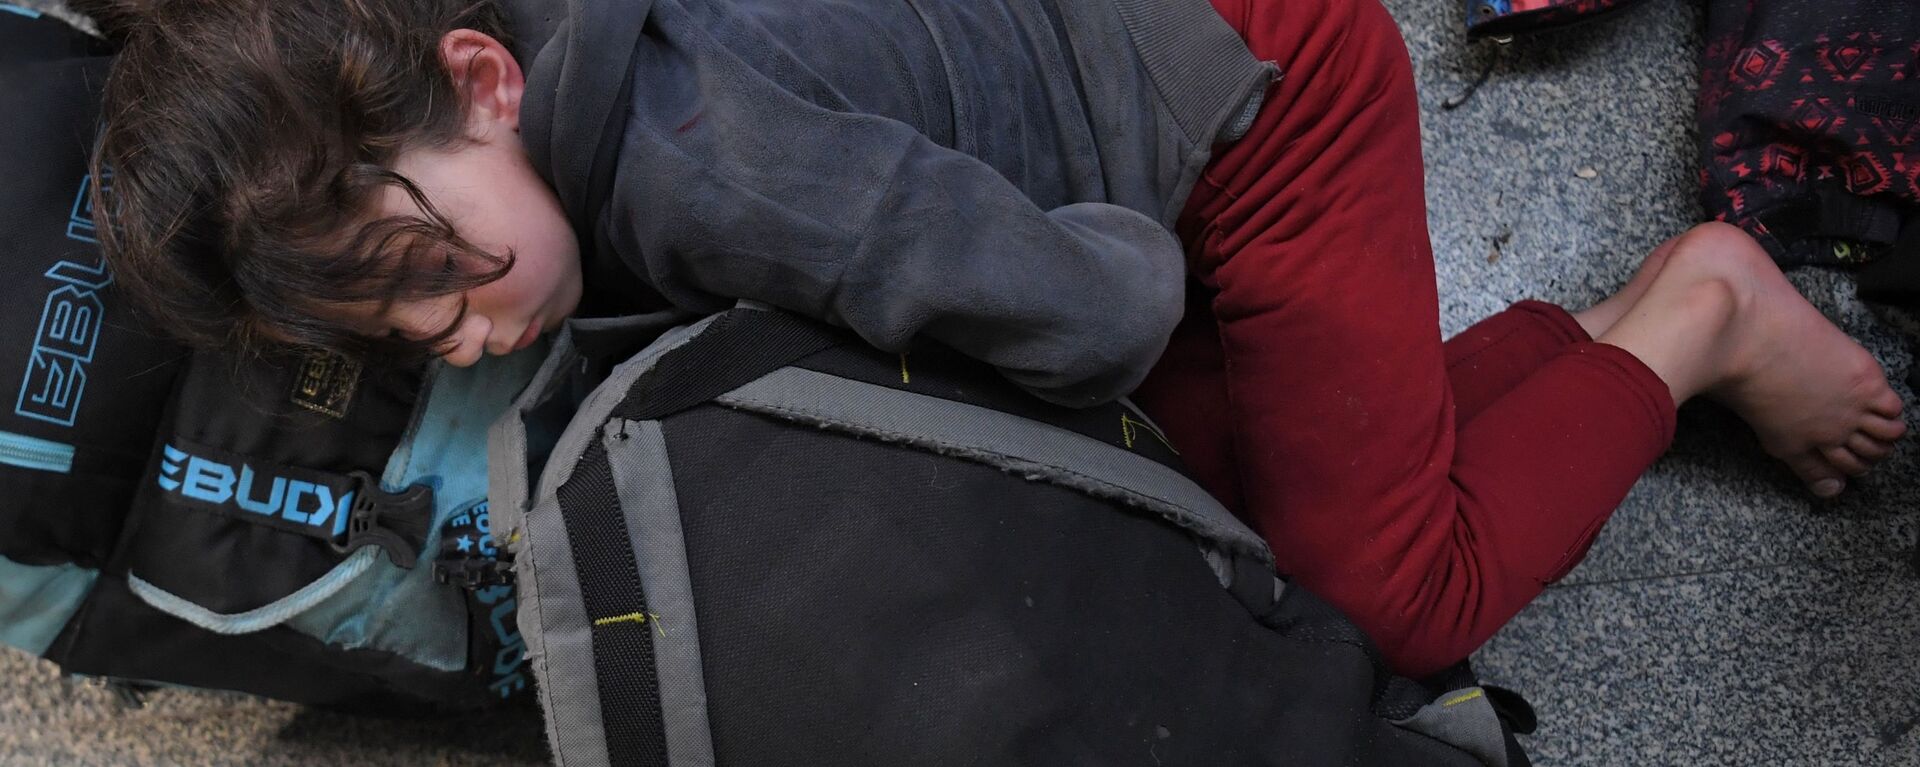 Ребенок беженцев спит в международном аэропорту Минска в ожидании вывозных рейсов авиакомпании Iraqi Airways - Sputnik Латвия, 1920, 15.04.2022